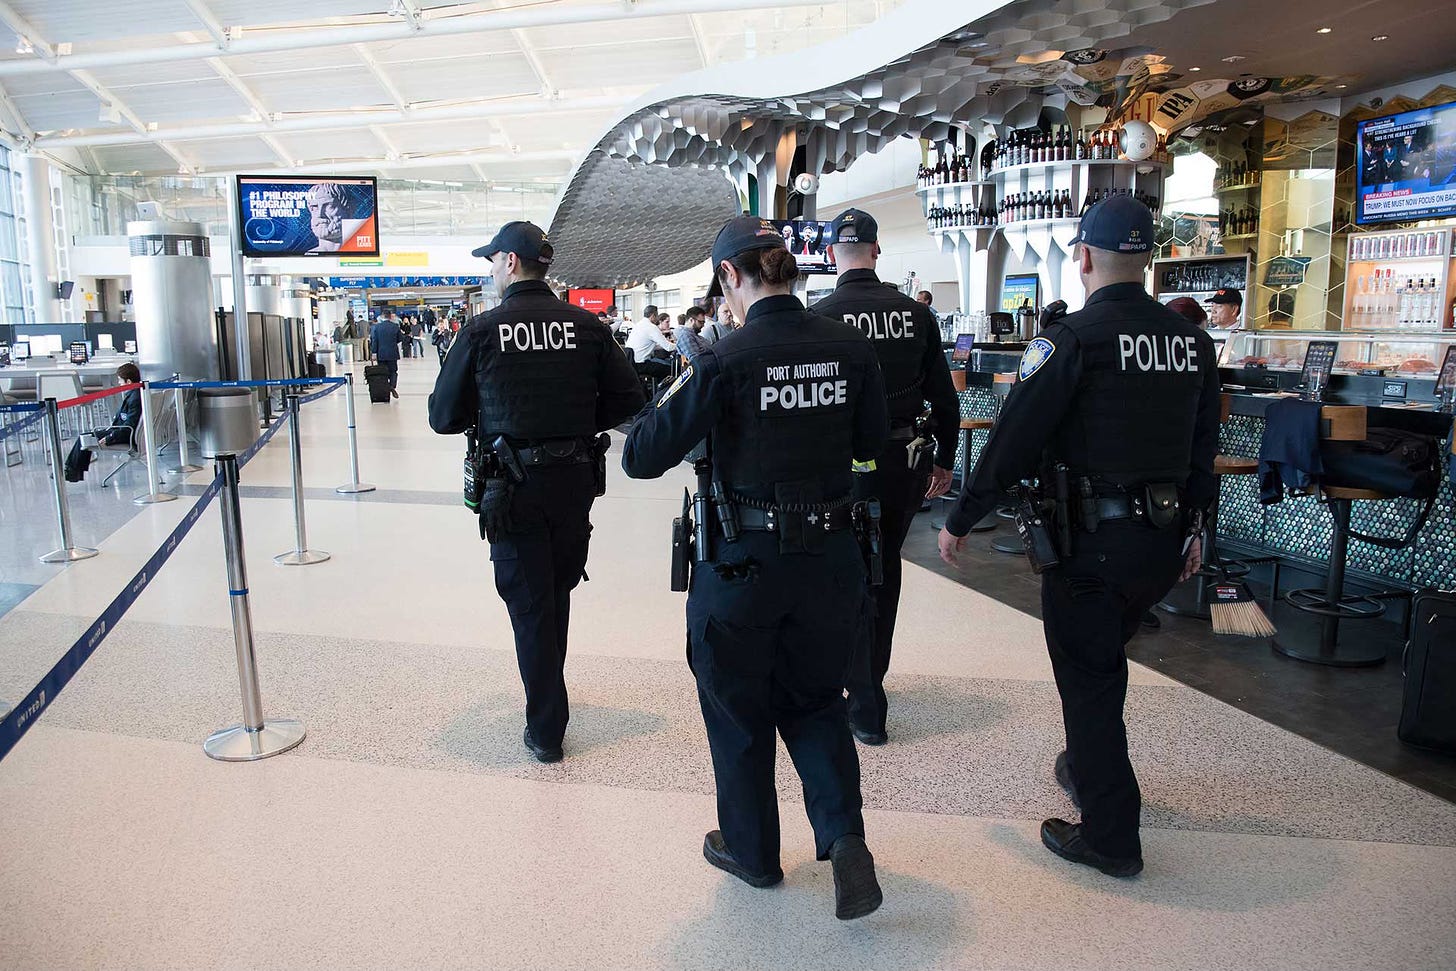 Police walking through airport terminal.